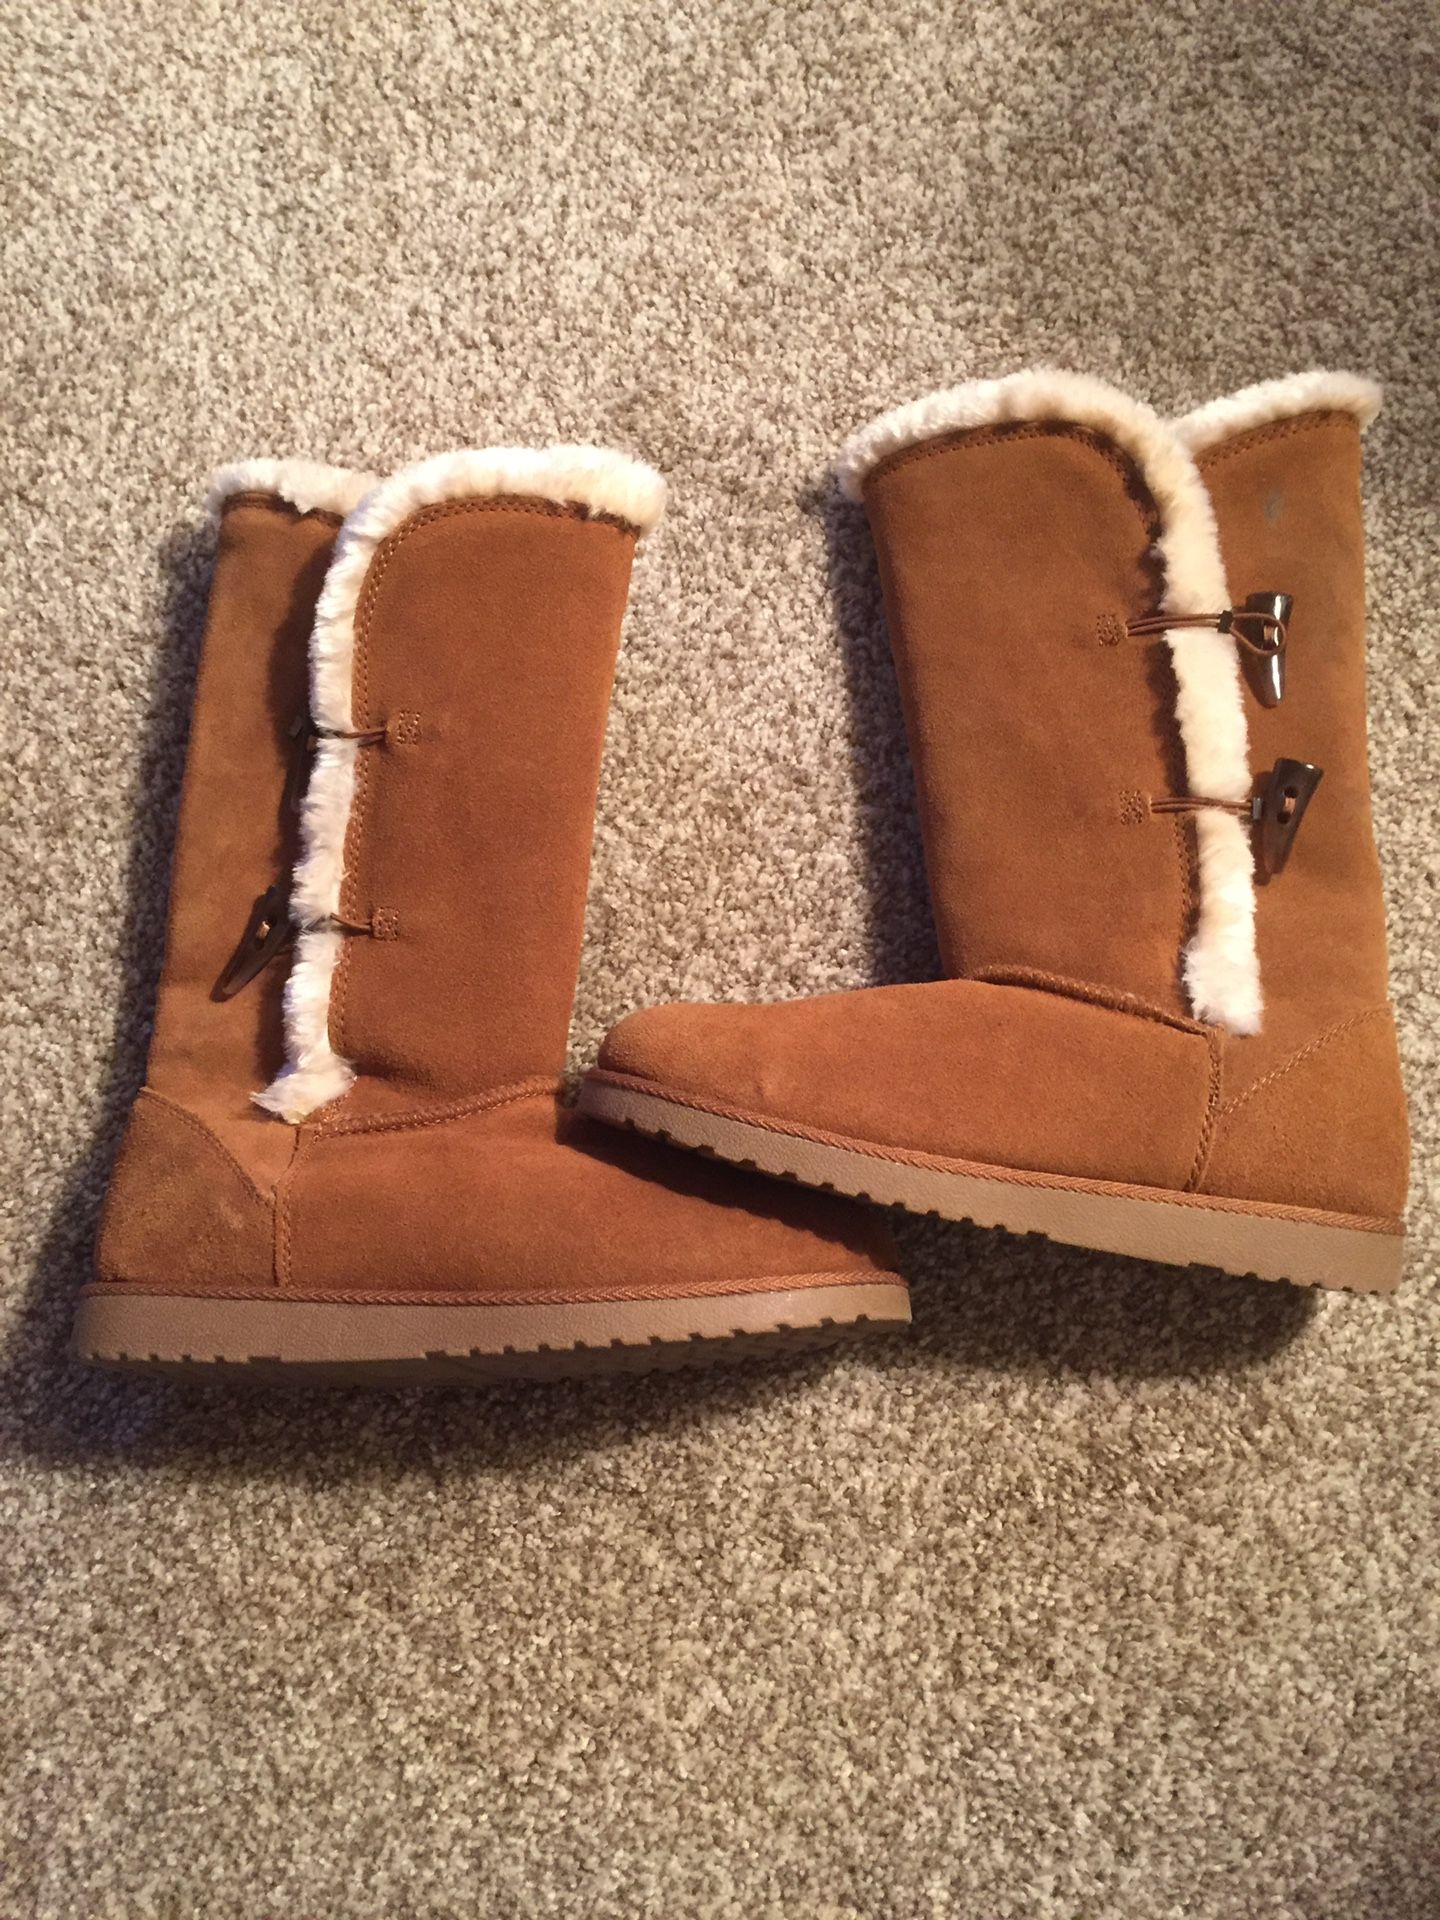 Women’s winter boots - $25